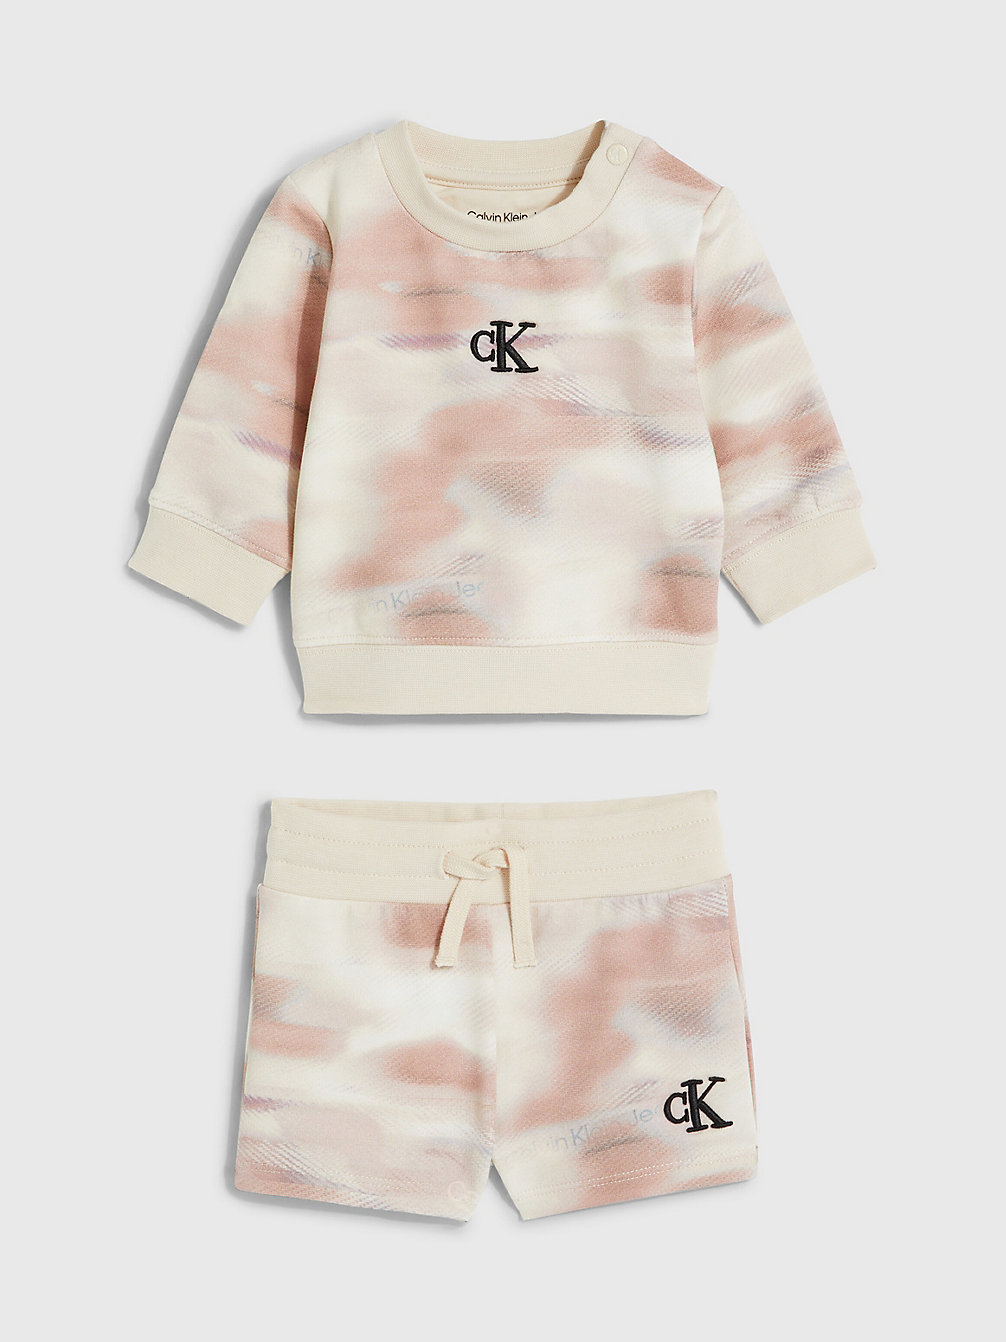 TIE DYE AOP Newborn Sweatshirt And Shorts Set undefined newborn Calvin Klein